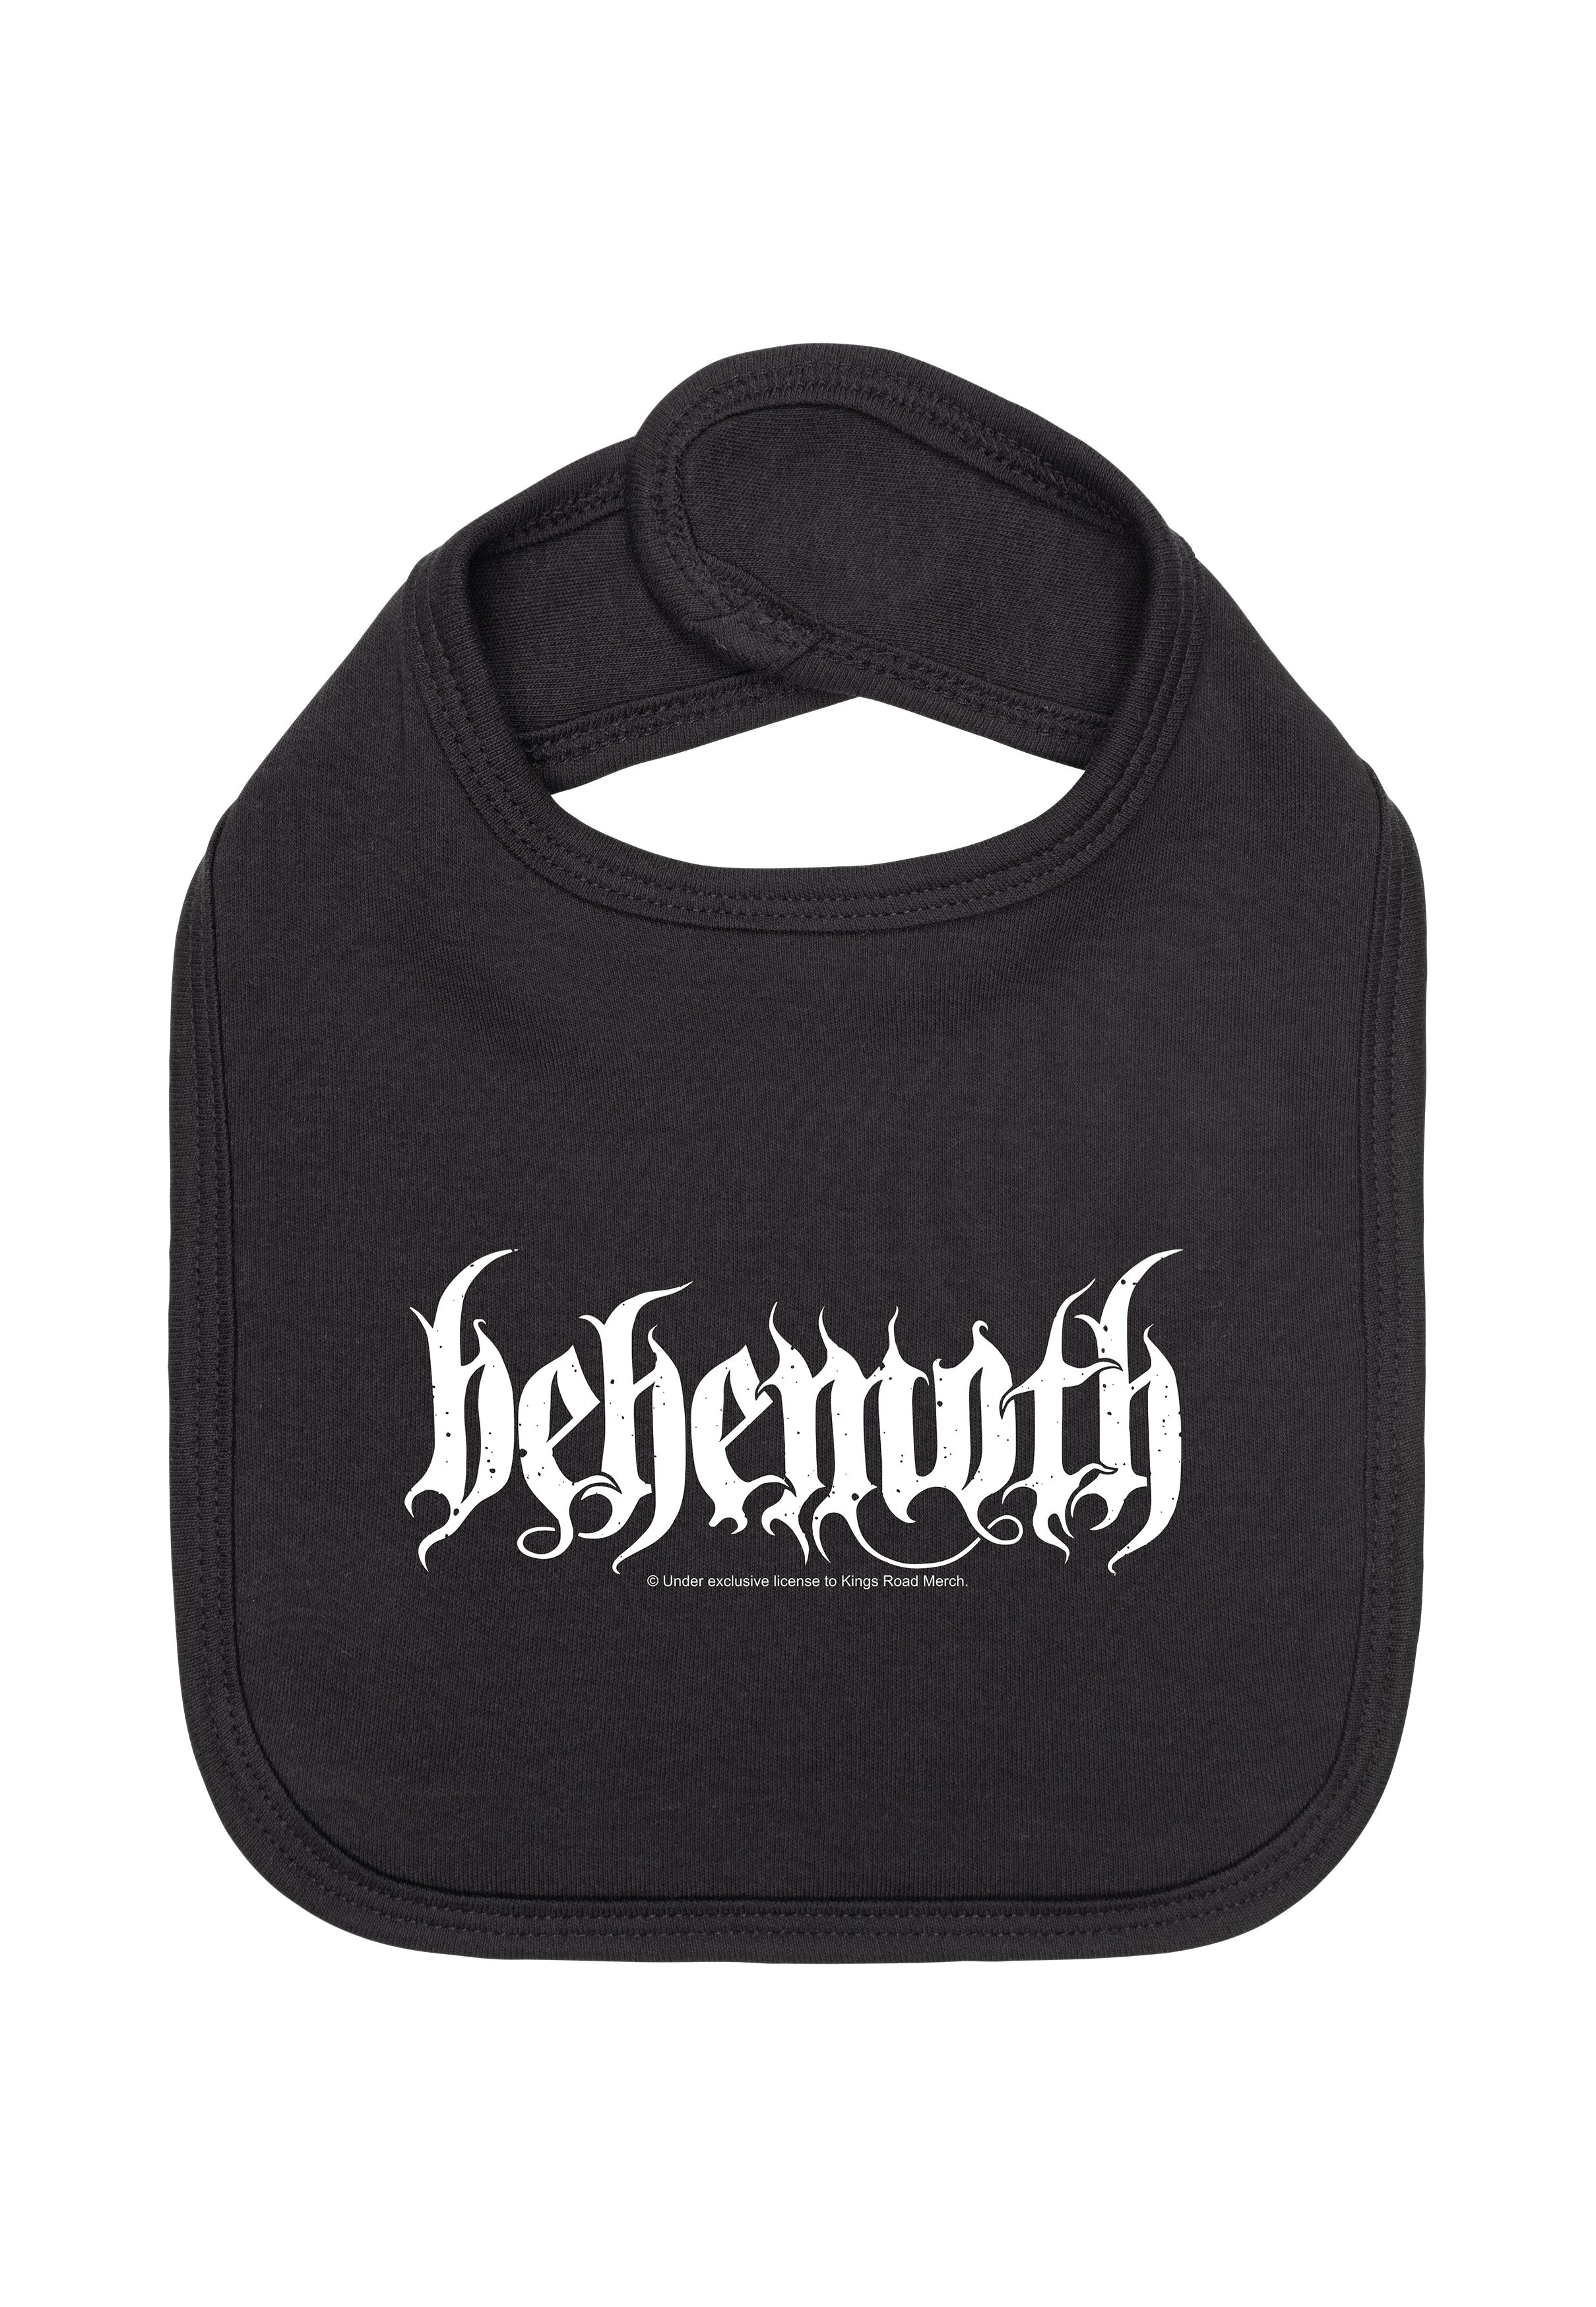 Behemoth - Logo Black/White - Baby Bib